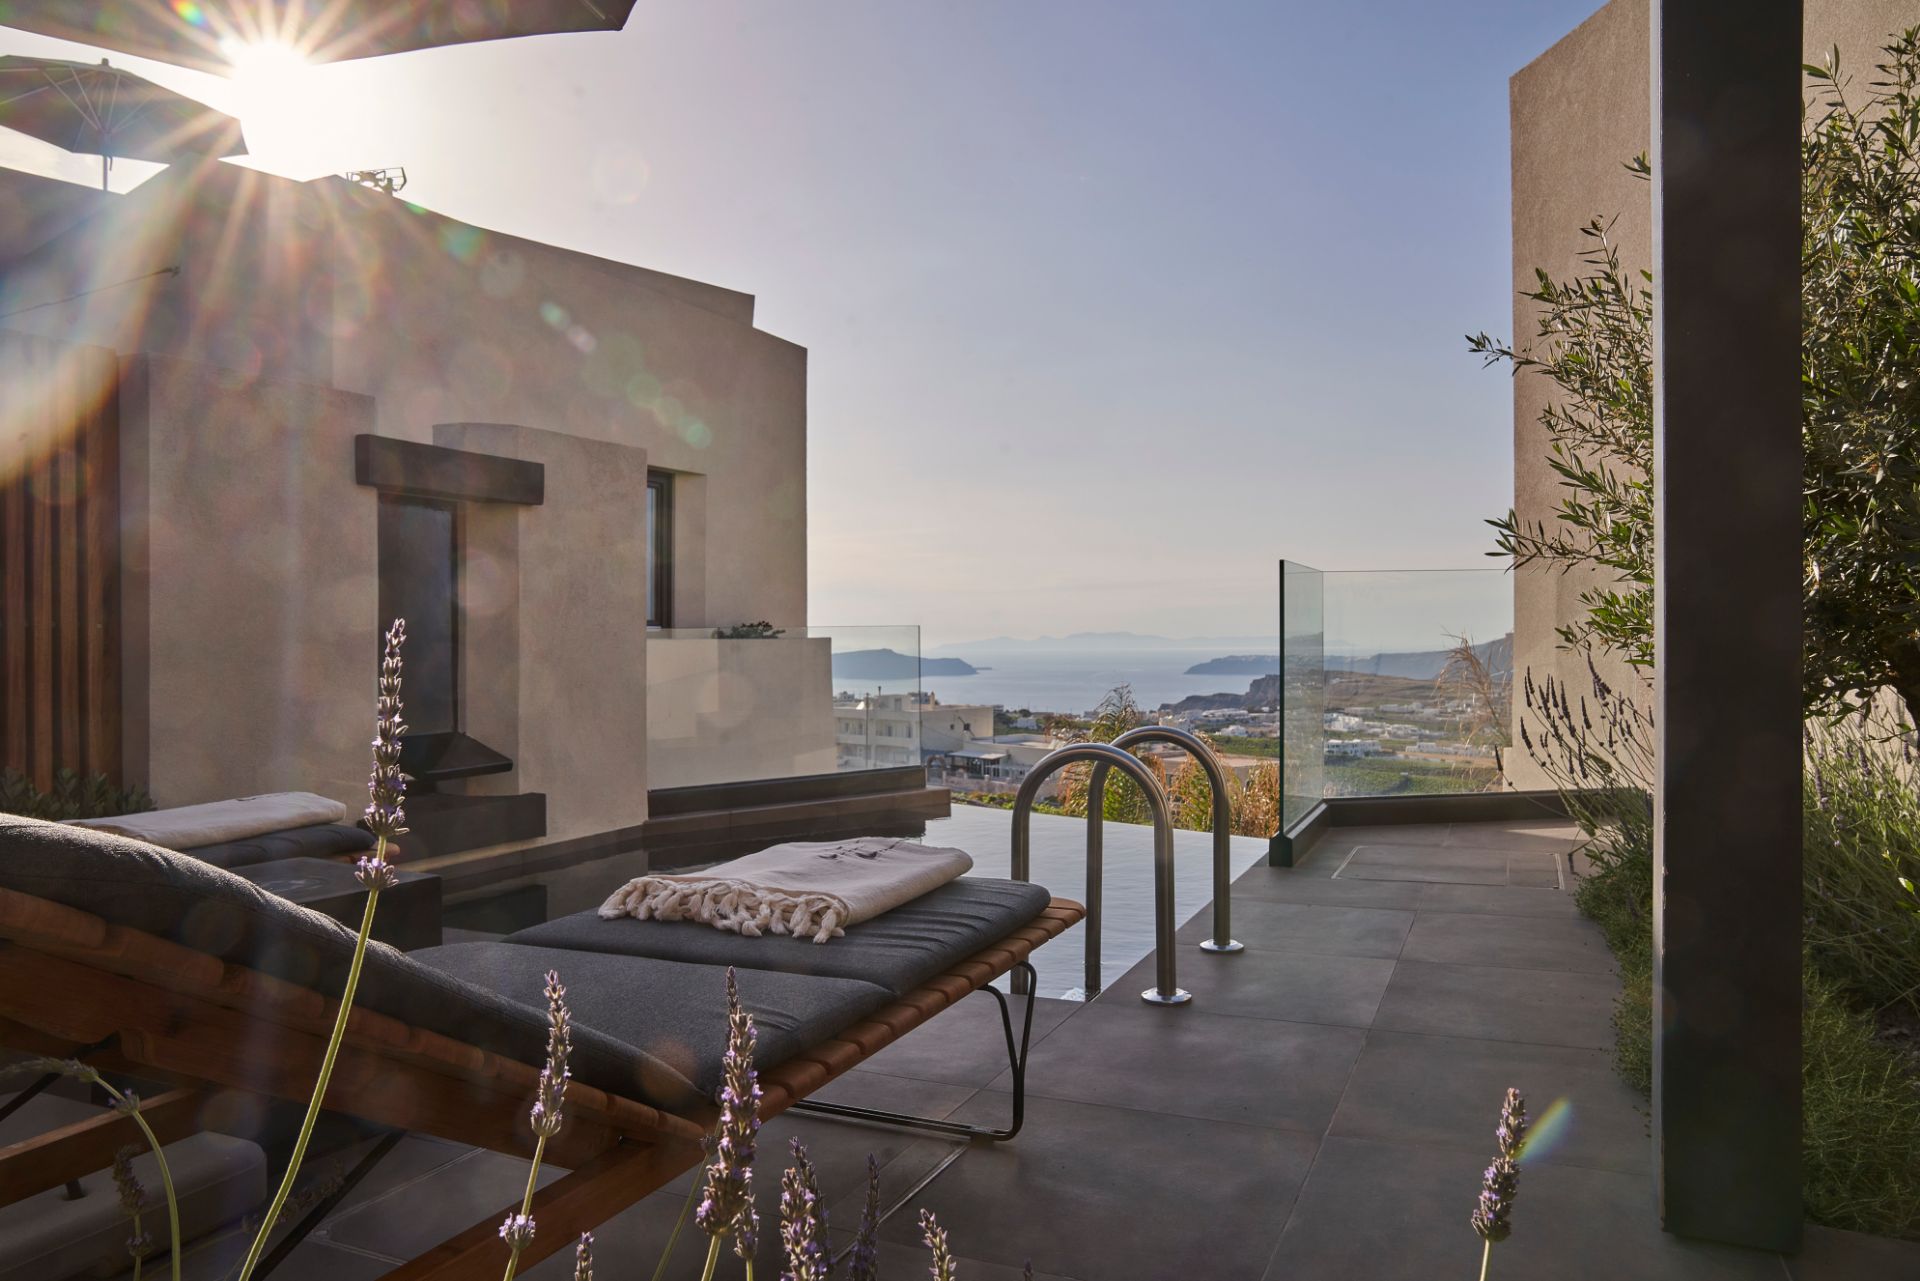 Apikia-Santorini-Two-Bedroom-Suite-Panoramic-View-4